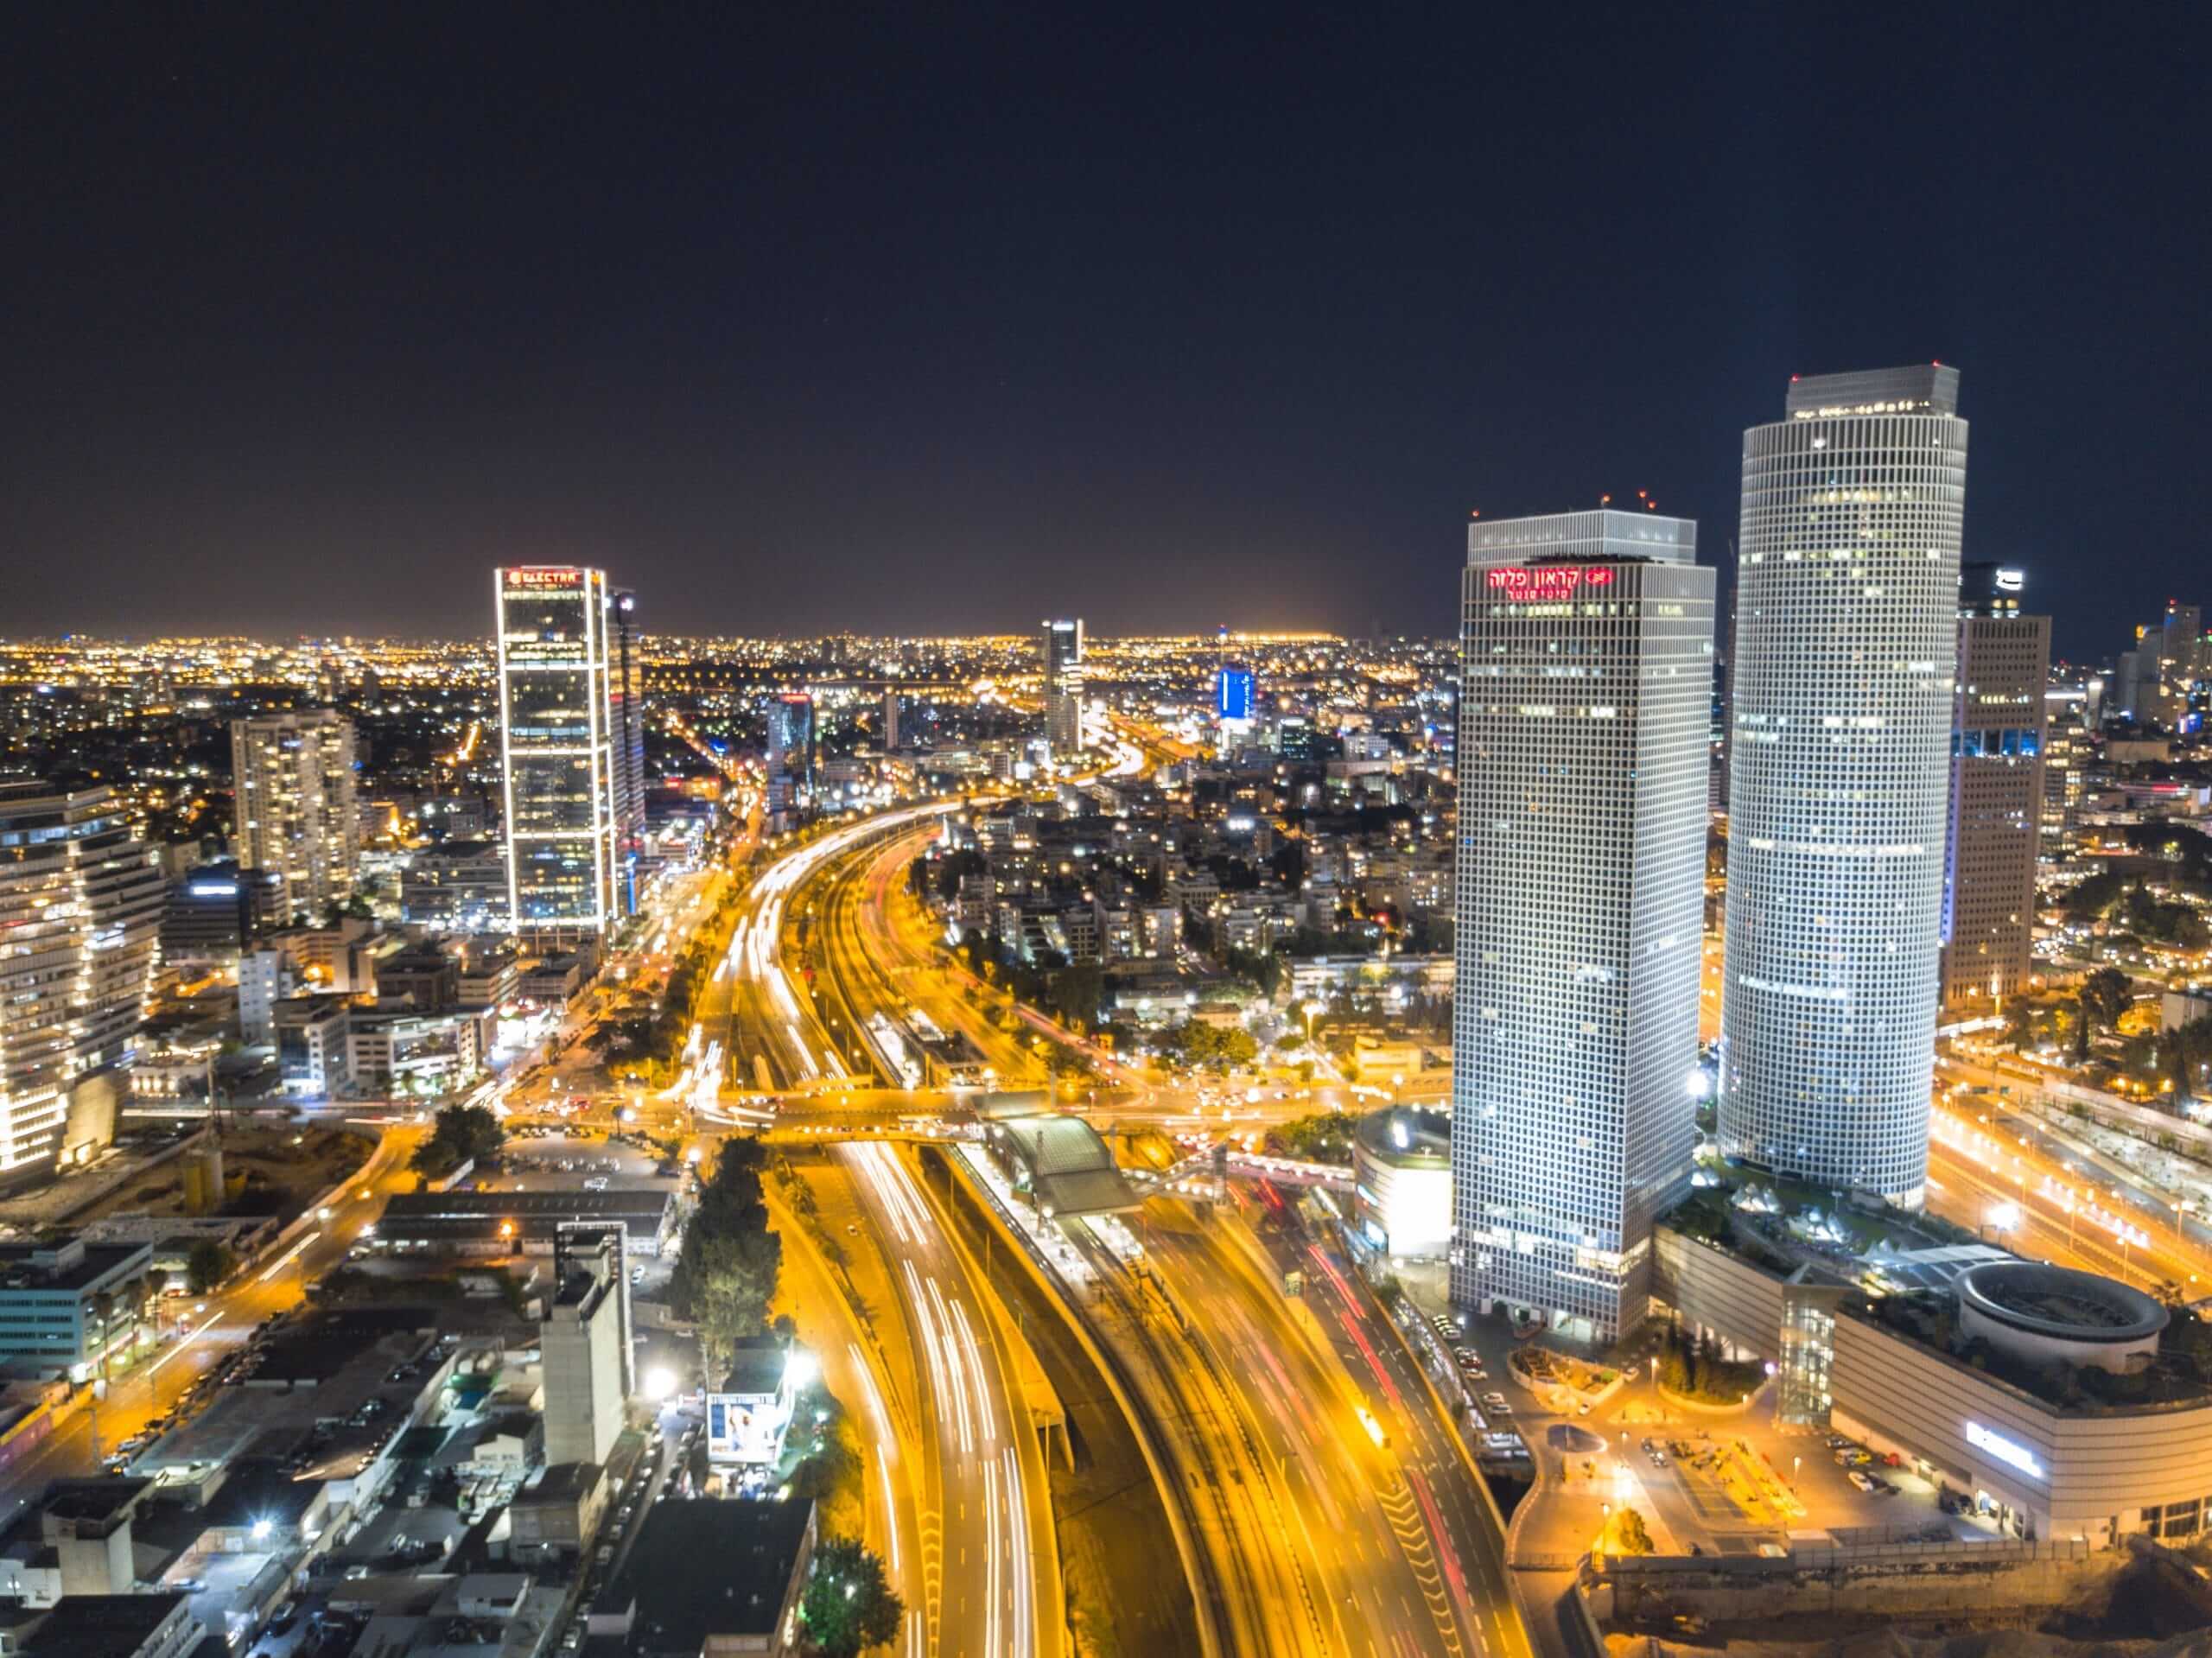 Tel Aviv at Night